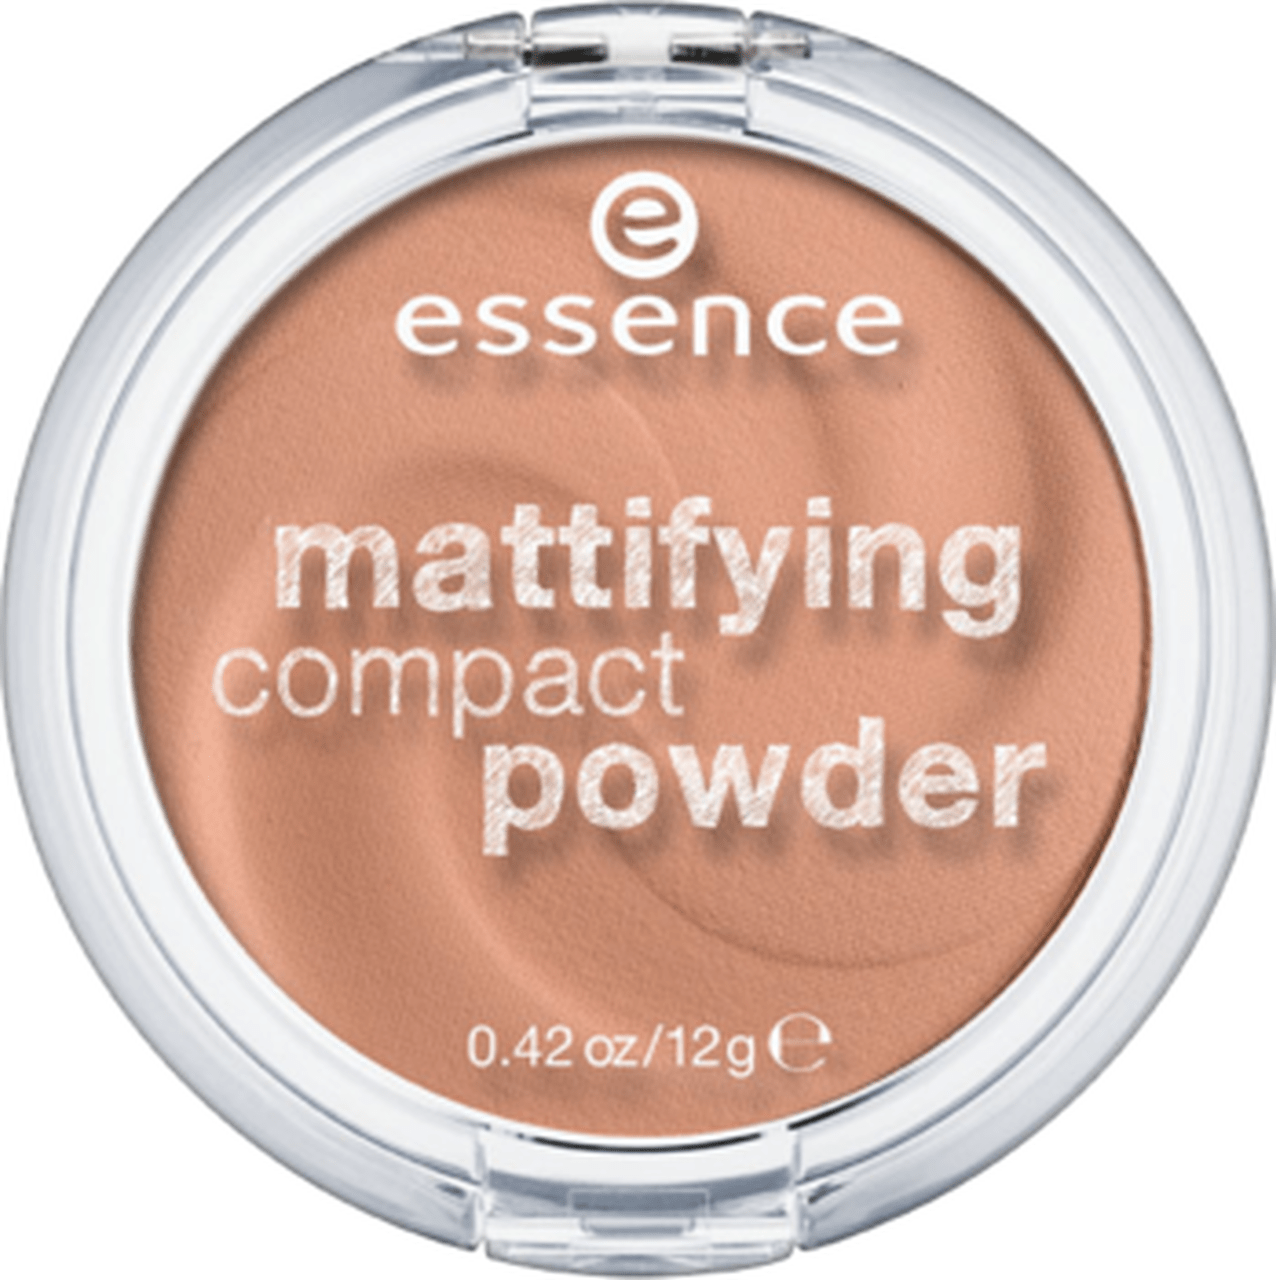 Essence Mattifying Compact Powder 02 Minoustore